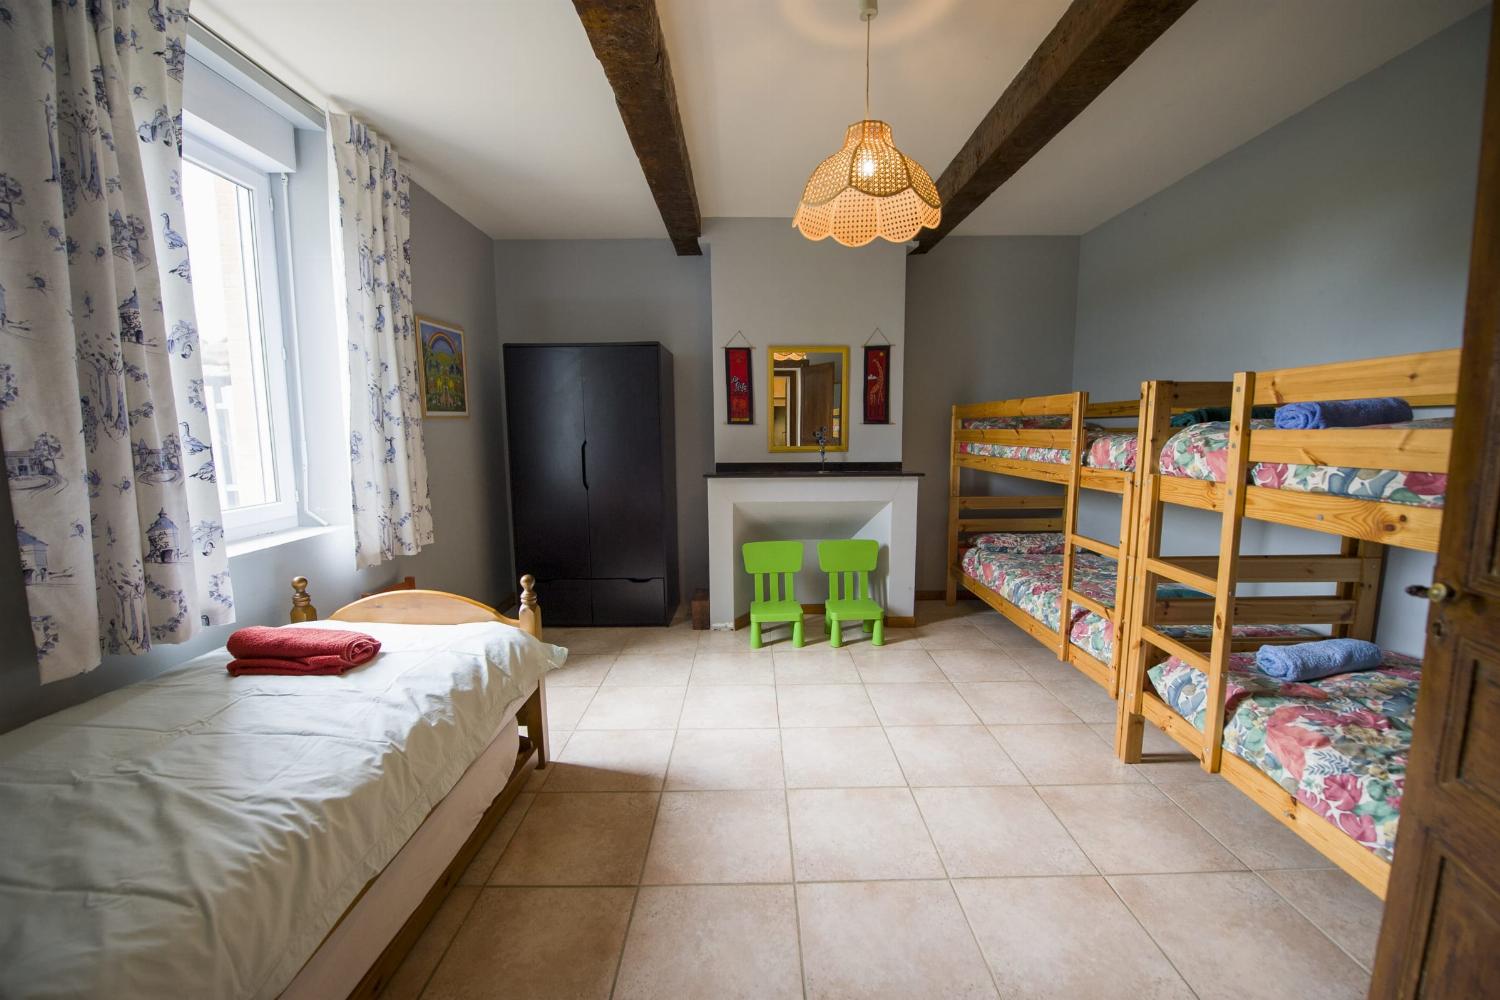 Bedroom | Rental home in Haute-Garonne